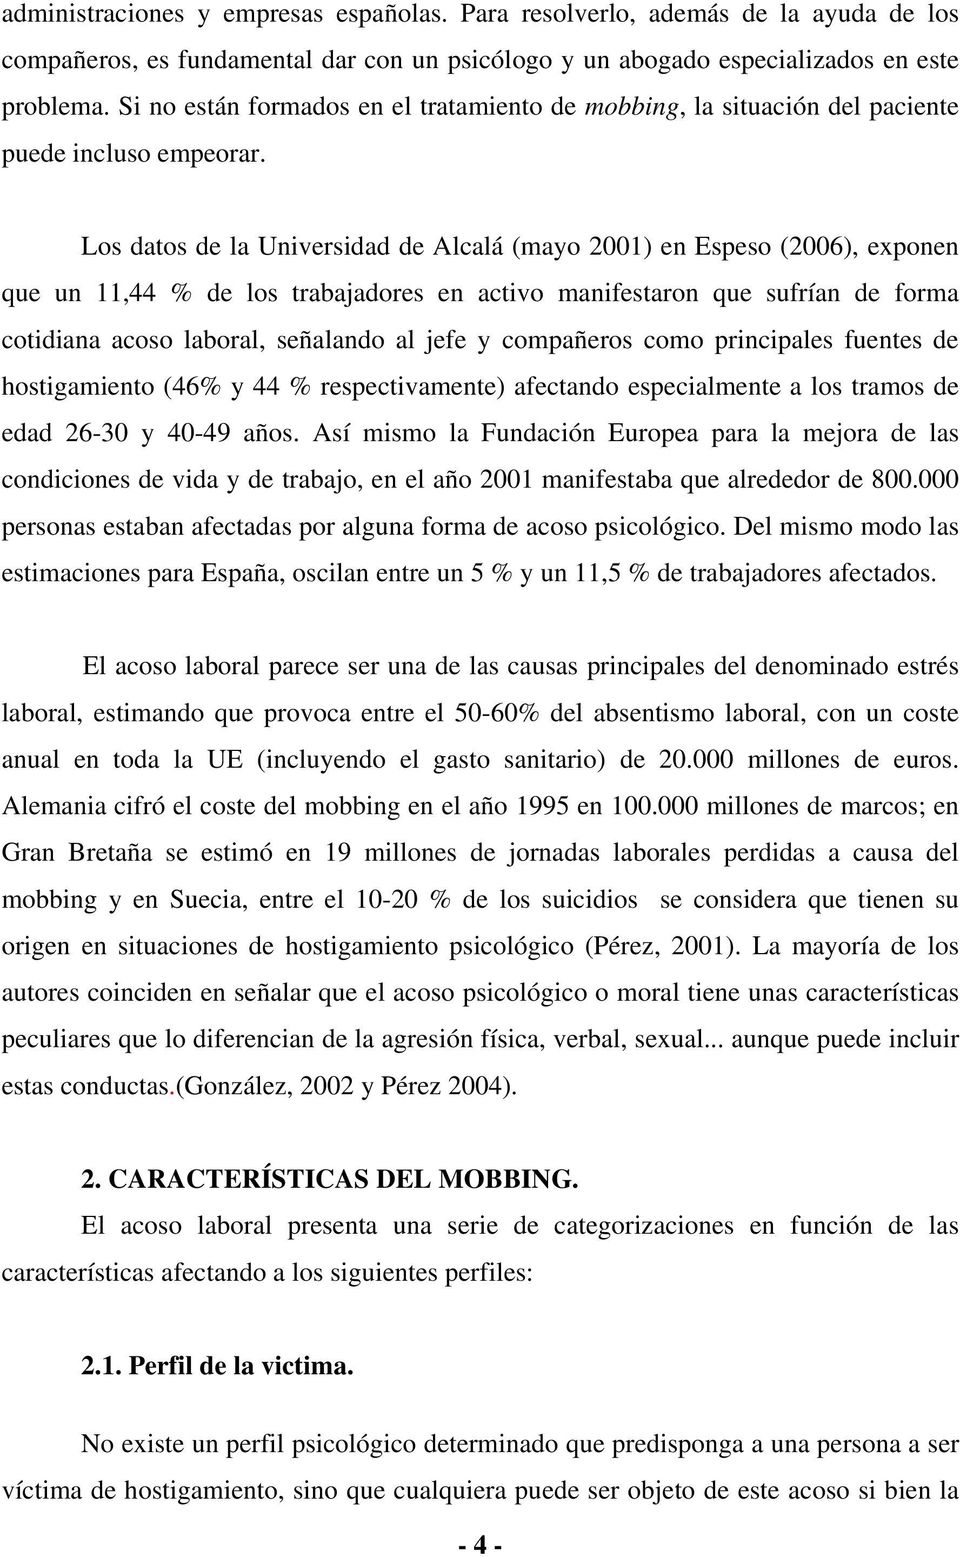 Los datos de la Universidad de Alcalá (mayo 2001) en Espeso (2006), exponen que un 11,44 % de los trabajadores en activo manifestaron que sufrían de forma cotidiana acoso laboral, señalando al jefe y